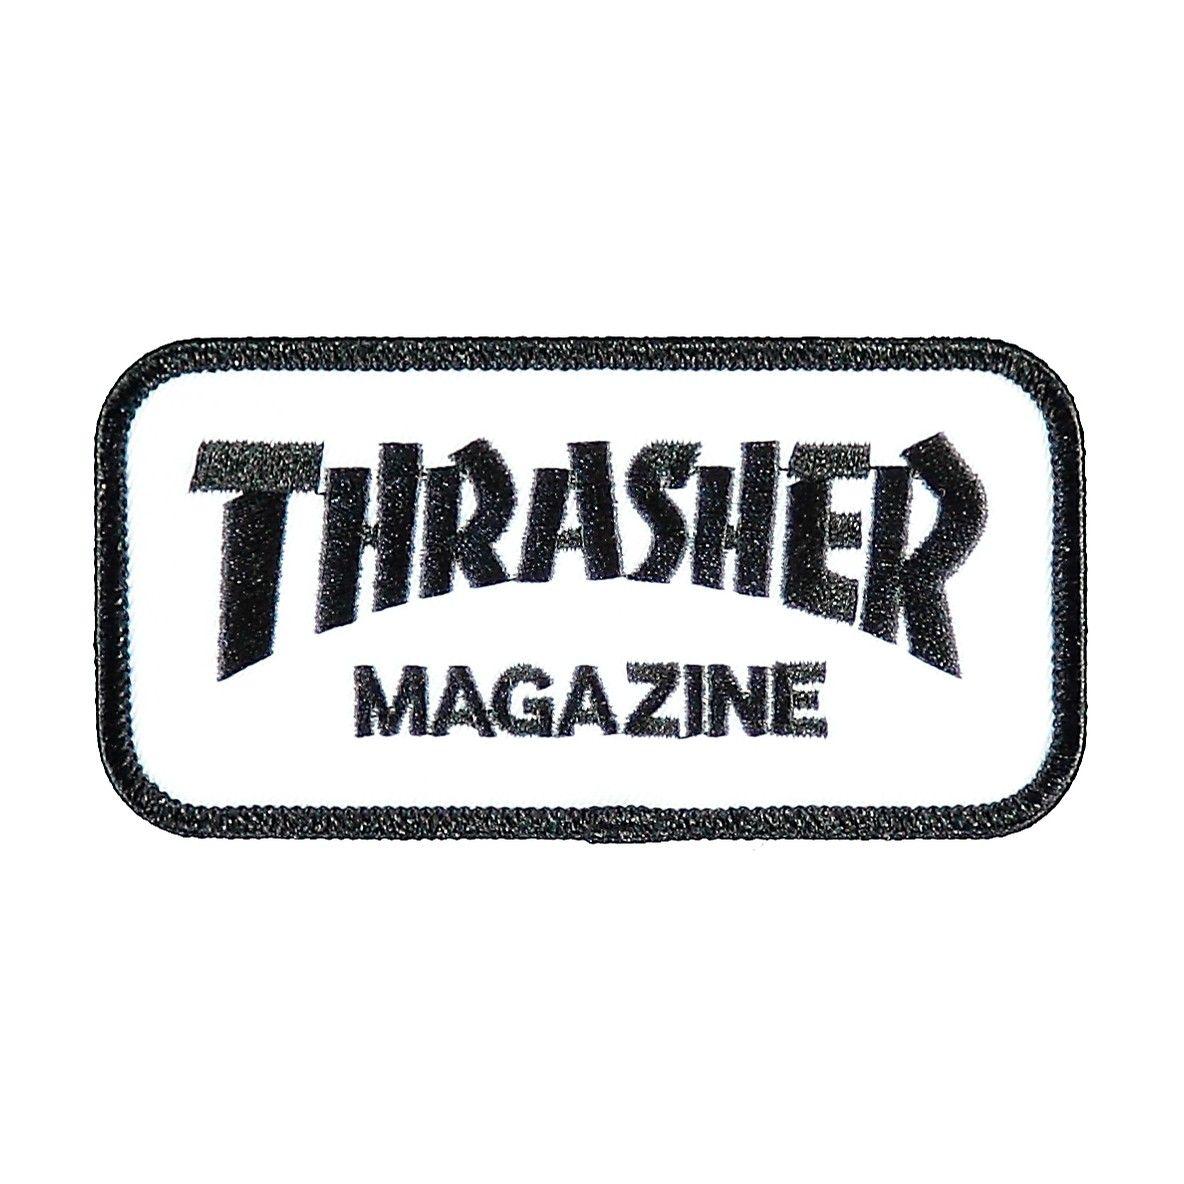 Black and White Skateboards Thrasher Logo